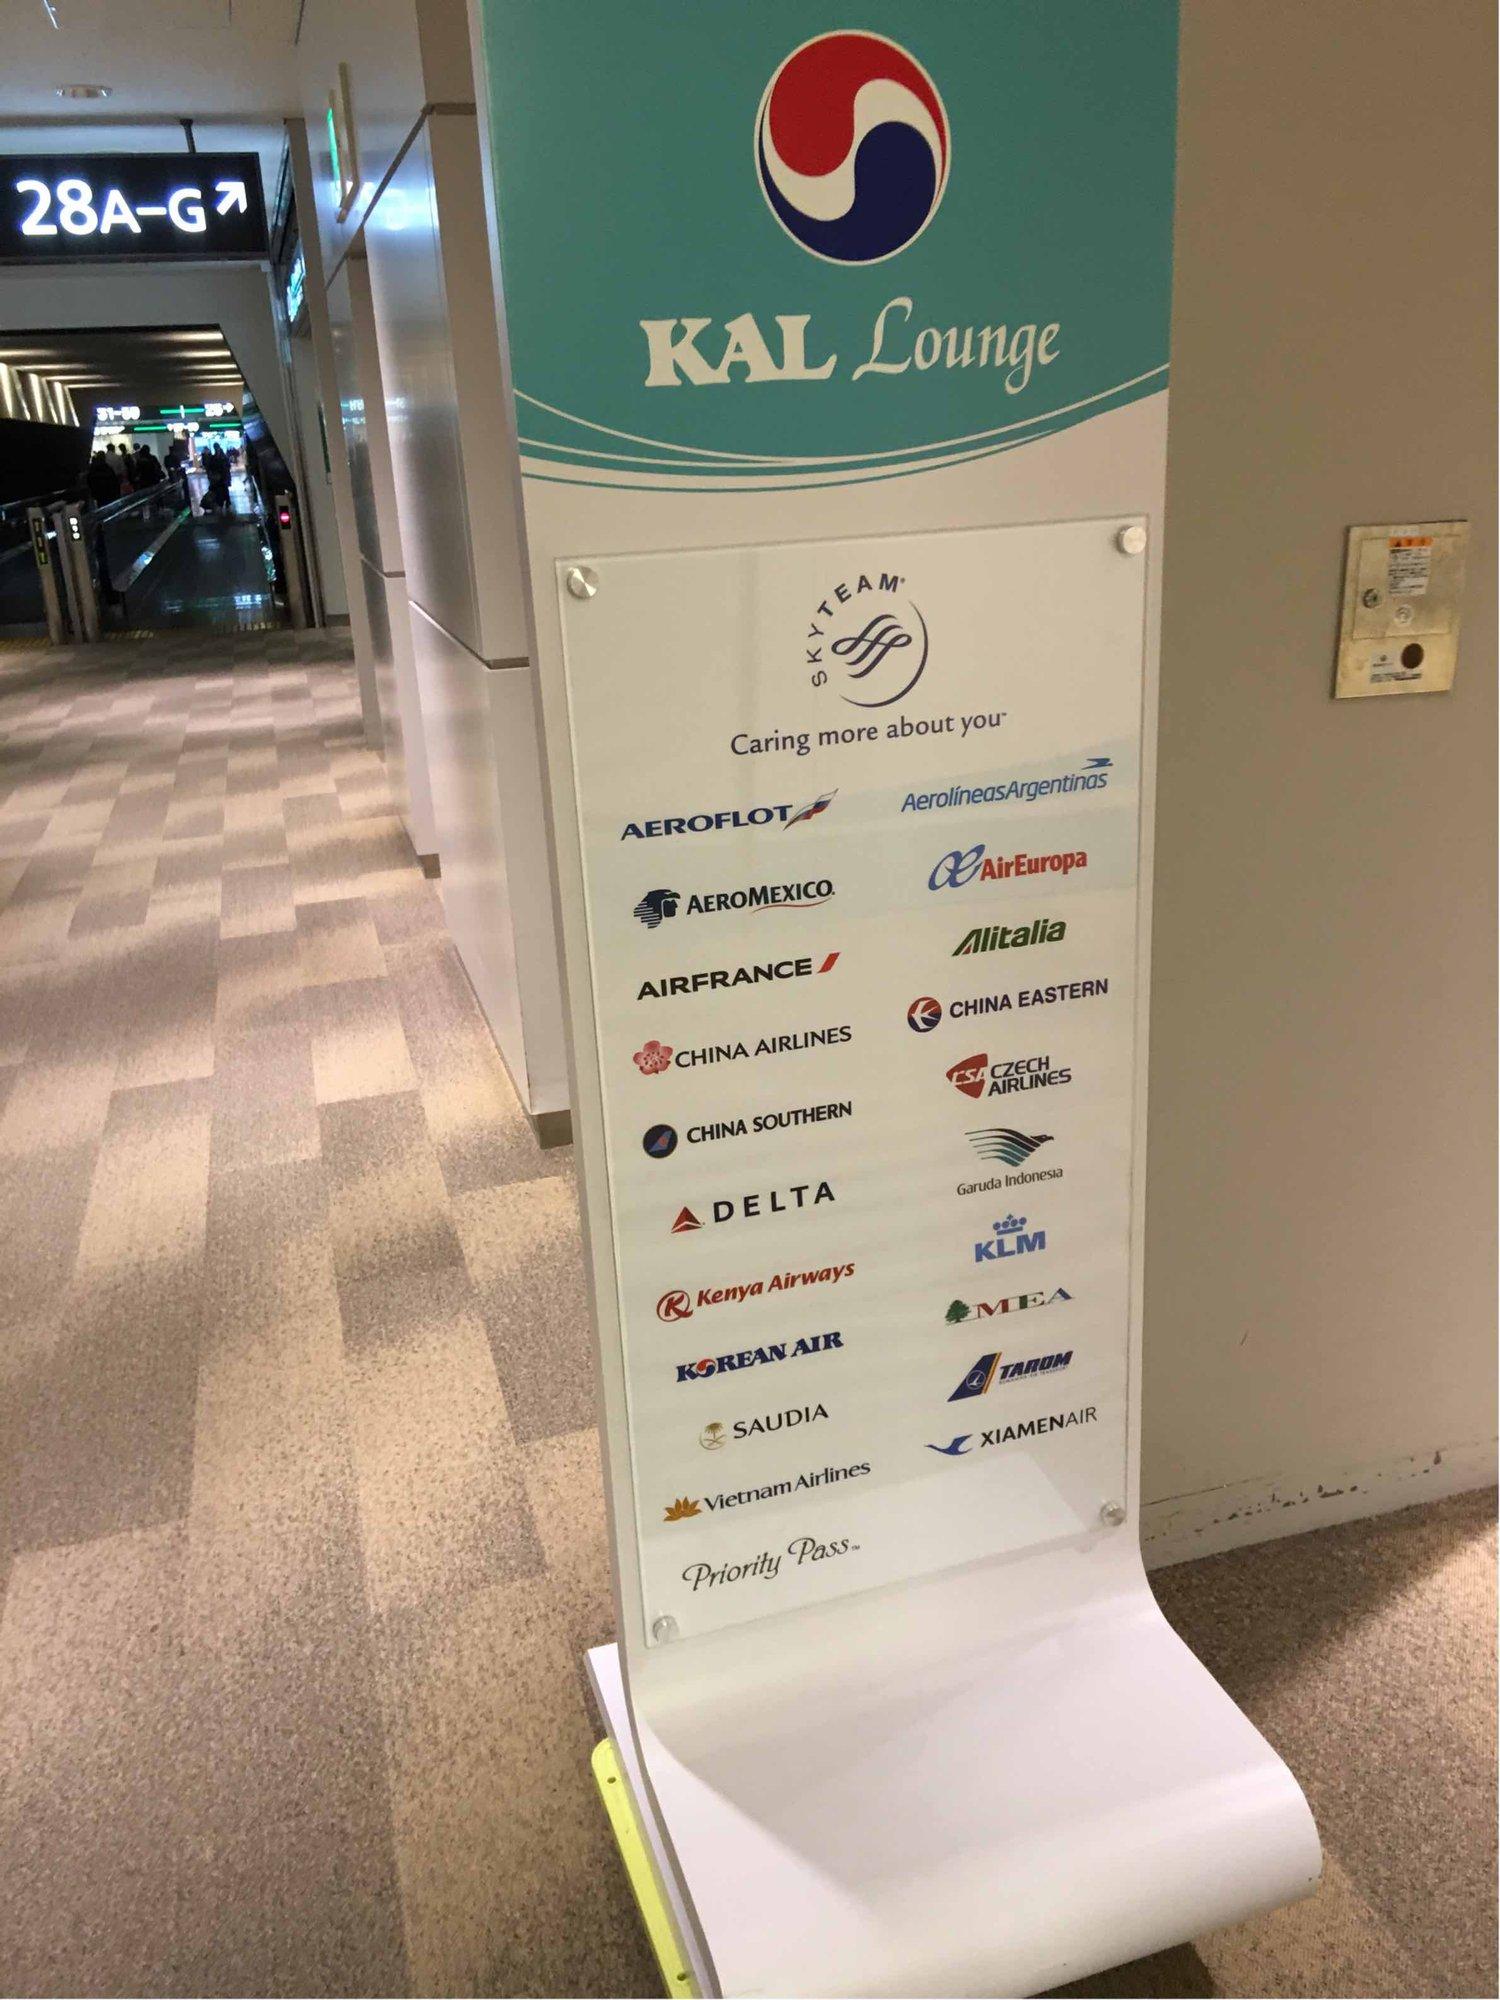 Korean Air KAL Lounge image 14 of 58